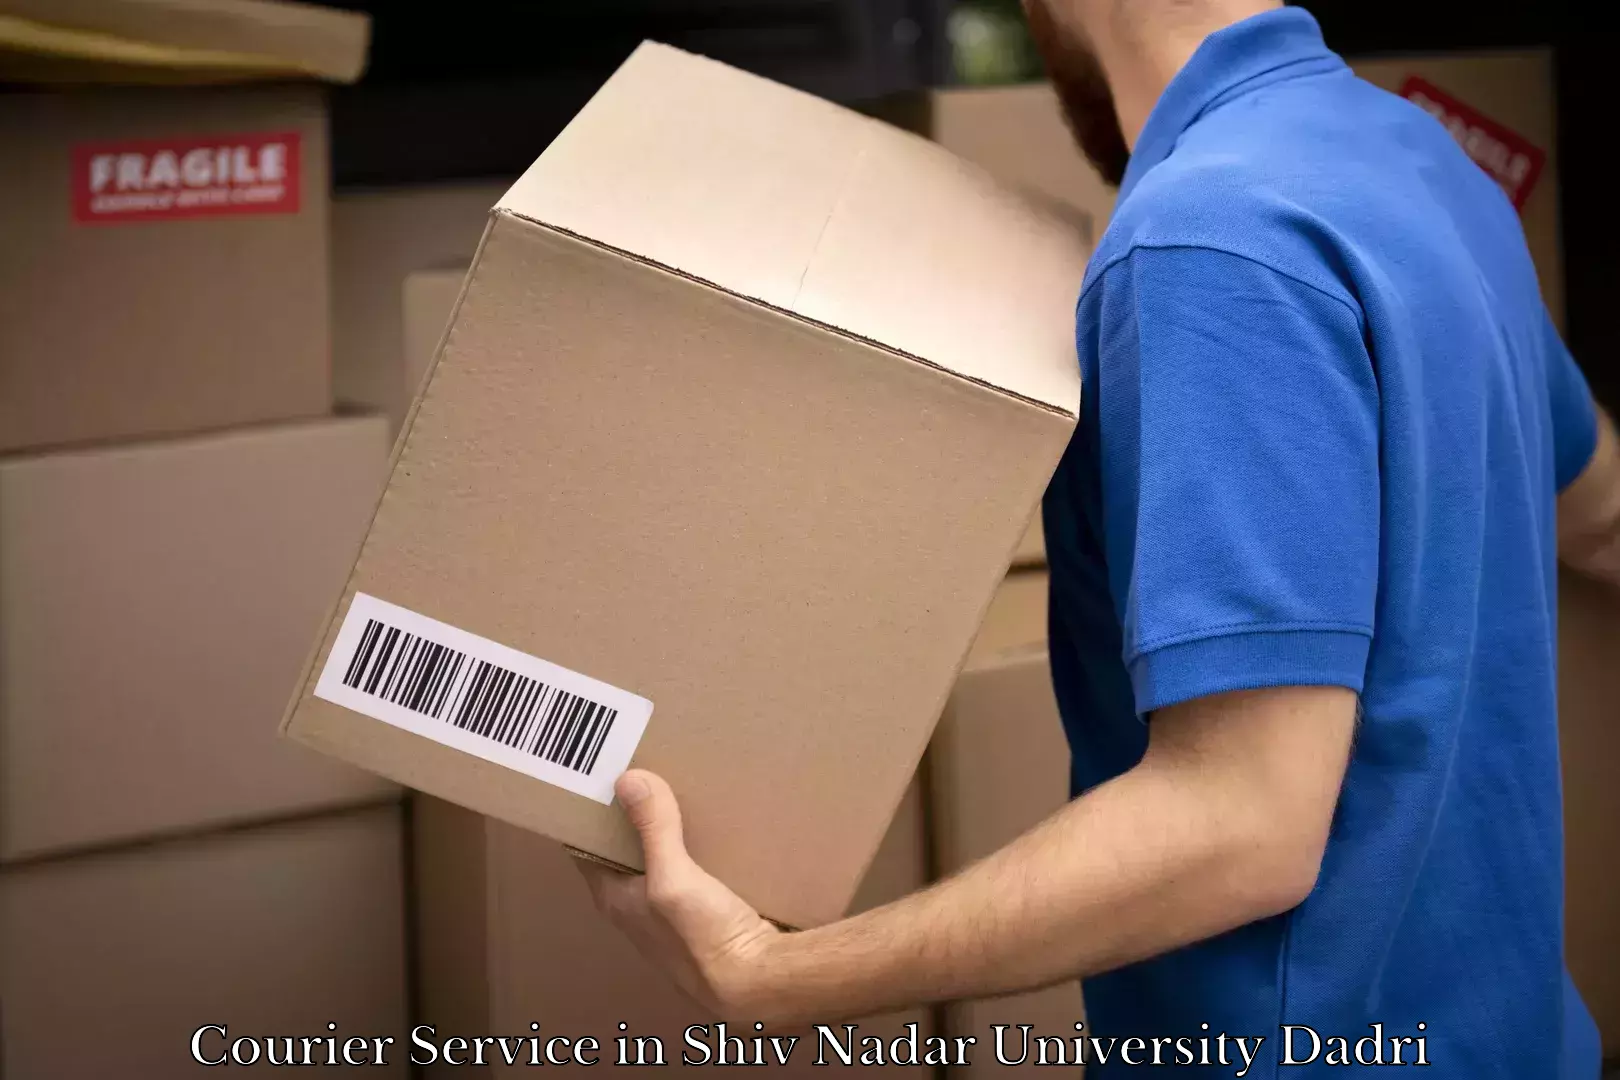 24/7 courier service in Shiv Nadar University Dadri